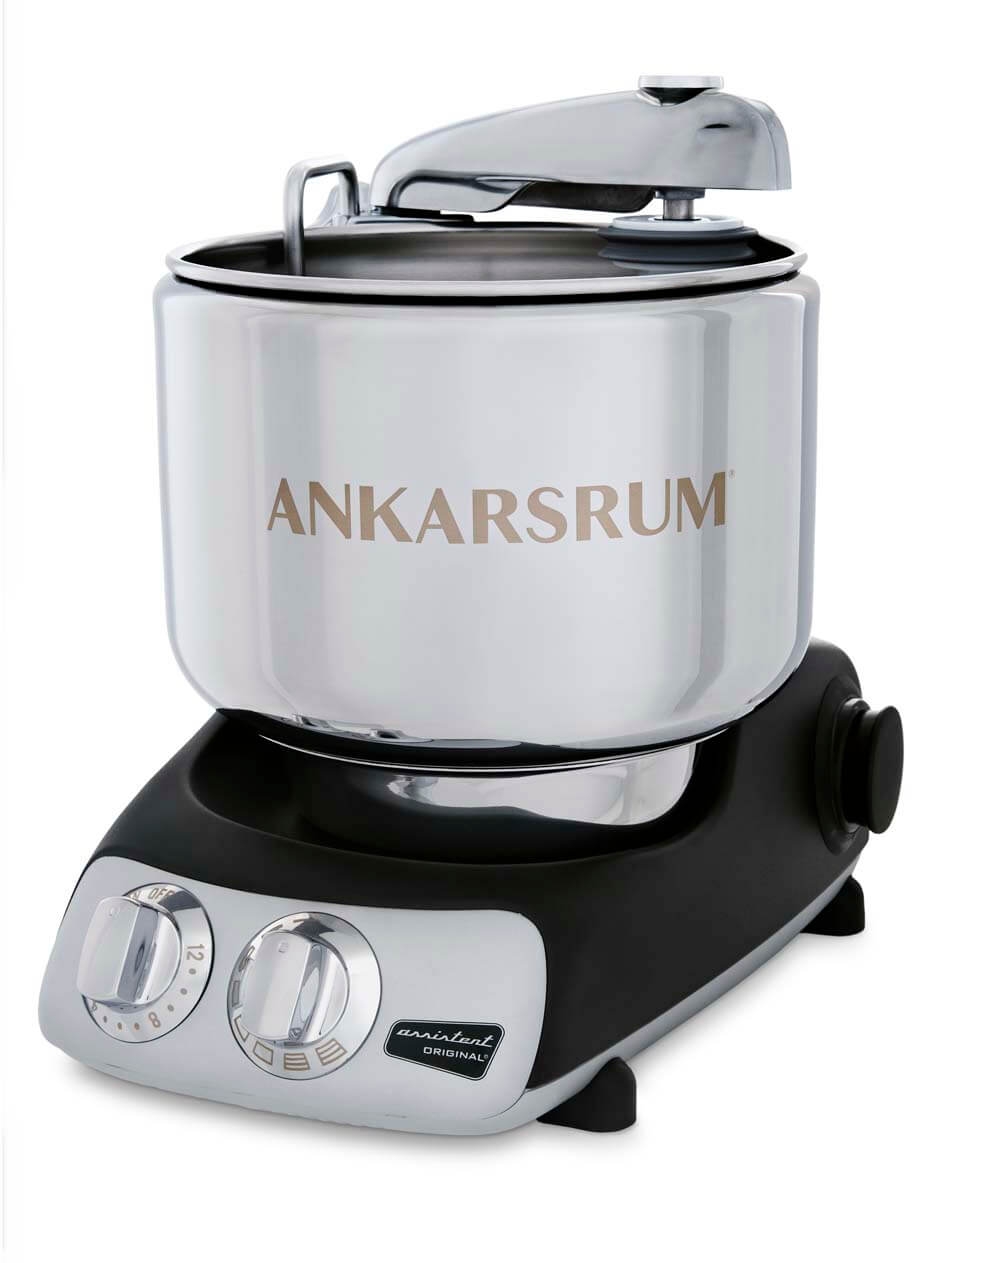 ANKARSRUM Assistent Universal-Küchenmaschine AKM6230BK